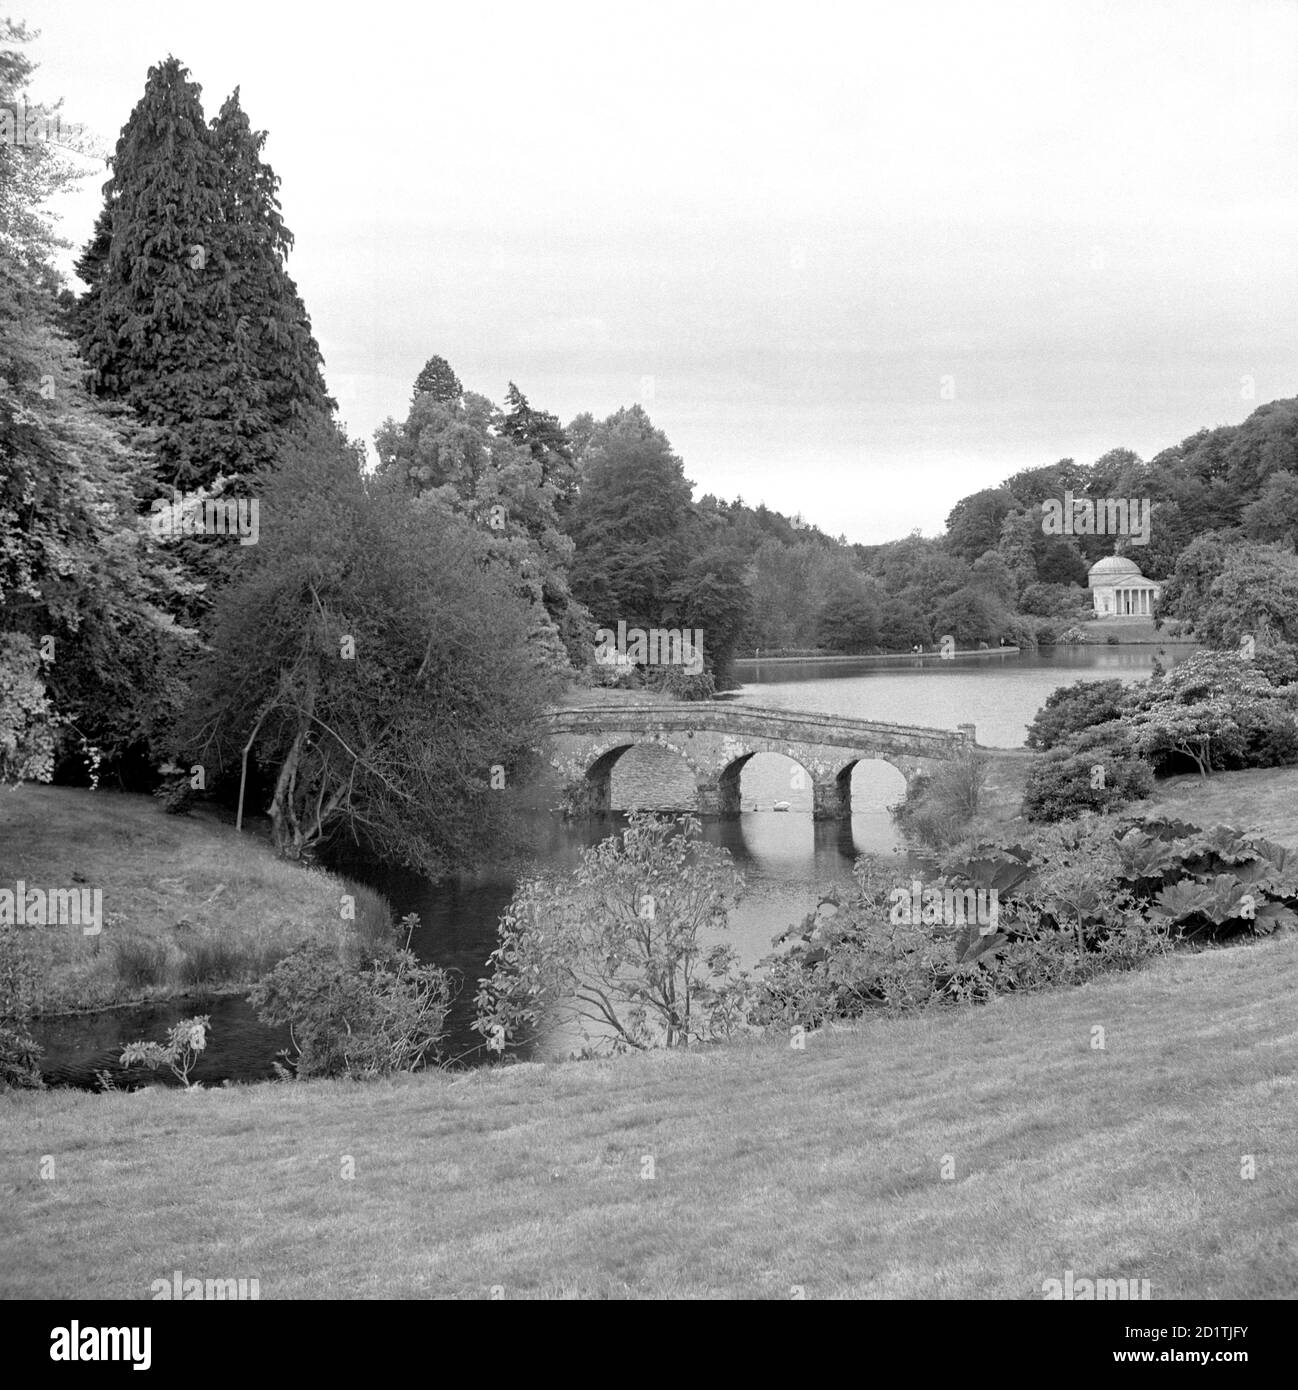 STOURHEAD PARK, Stourton, Wiltshire. Der malerische Stourhead Park wurde von Henry Hoare II geschaffen und zwischen 1741 und 80 angelegt. Das Tal wurde aufgestaut, um eine Wasserfläche zu schaffen. Die Palladio-Brücke (1762) und das Pantheon (1754) sind nur zwei der Gartenbauwerke, die einen Schwerpunkt für dramatische Ausblicke boten. Fotografiert von Eric de Mare zwischen 1945 und 1980. Stockfoto